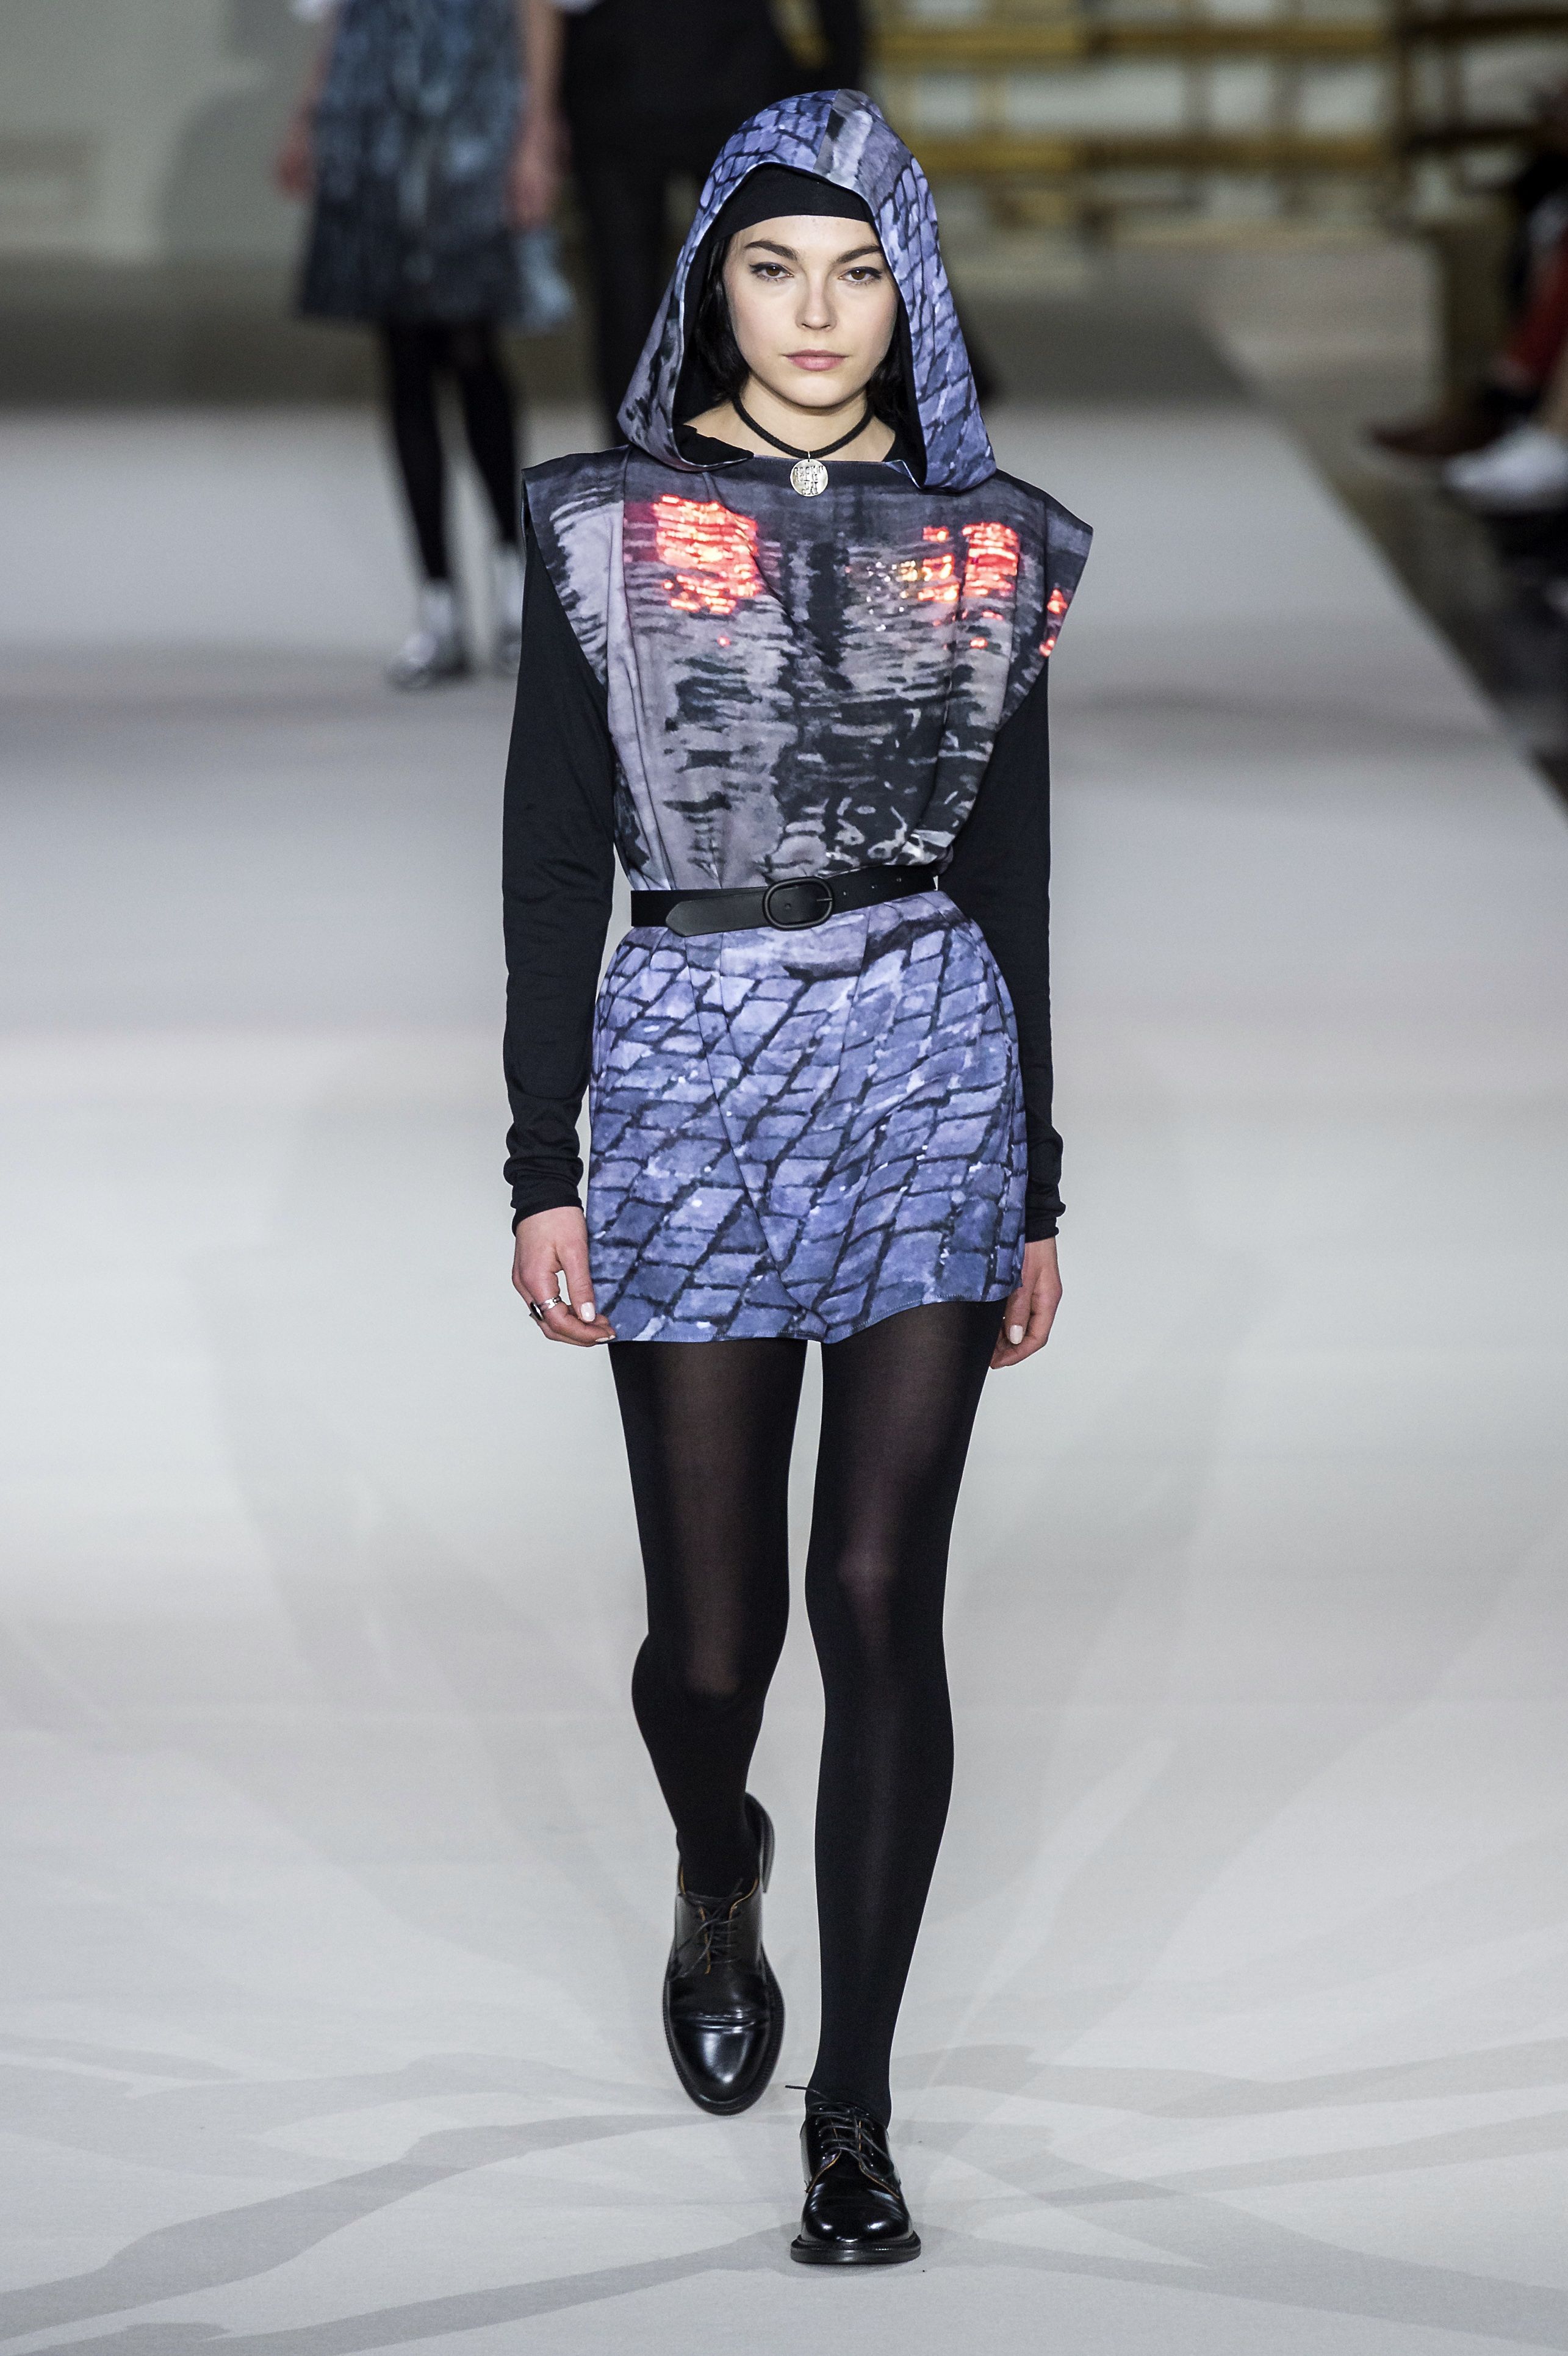 Calze moda 2020: i collant tendenza dell'Autunno Inverno 2019 dalle sfilate